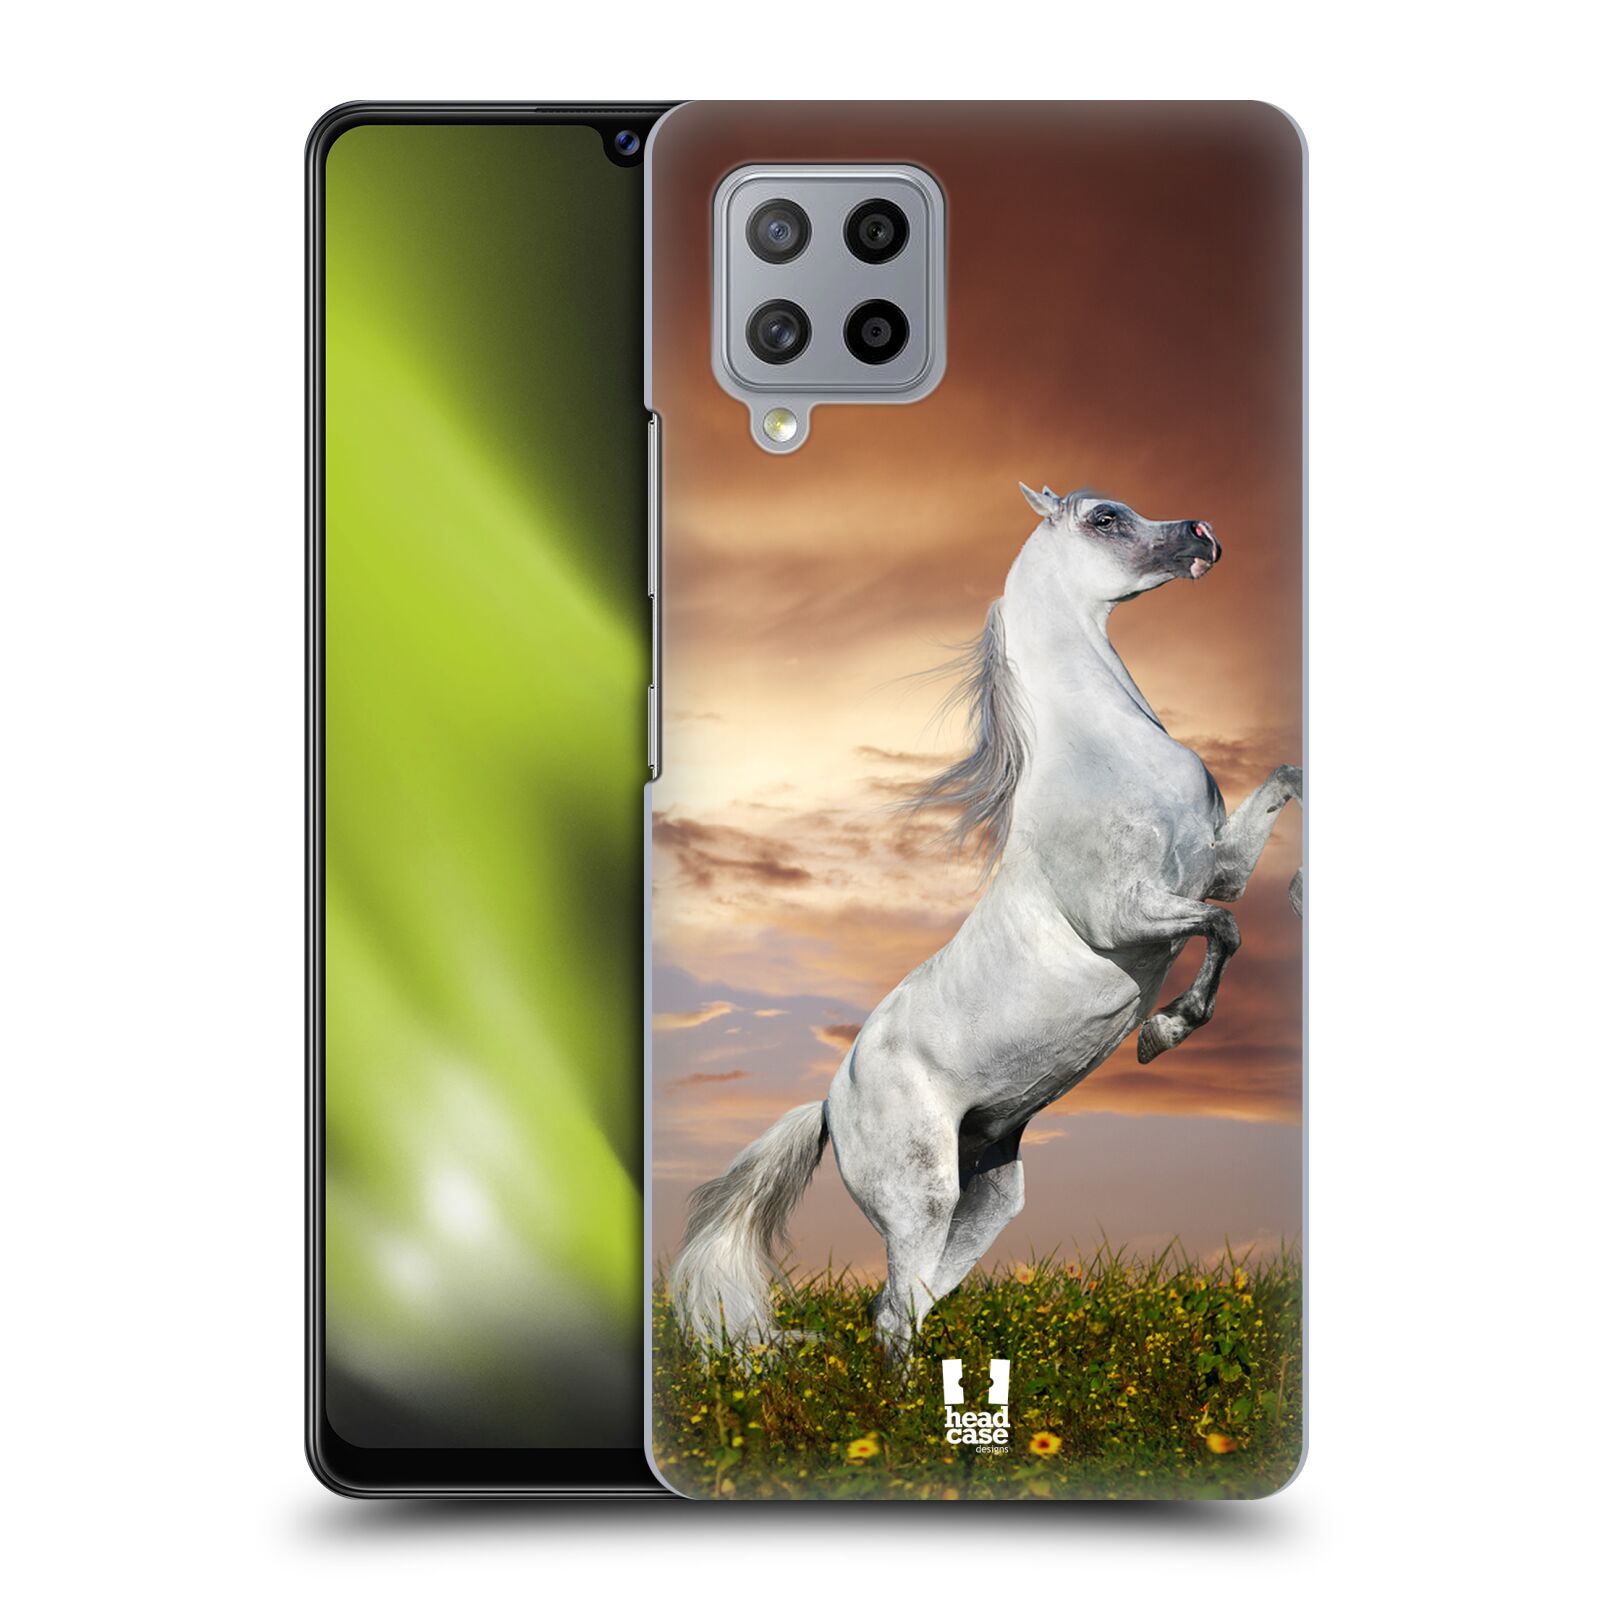 Zadní obal pro mobil Samsung Galaxy A42 5G - HEAD CASE - Svět zvířat divoký kůň